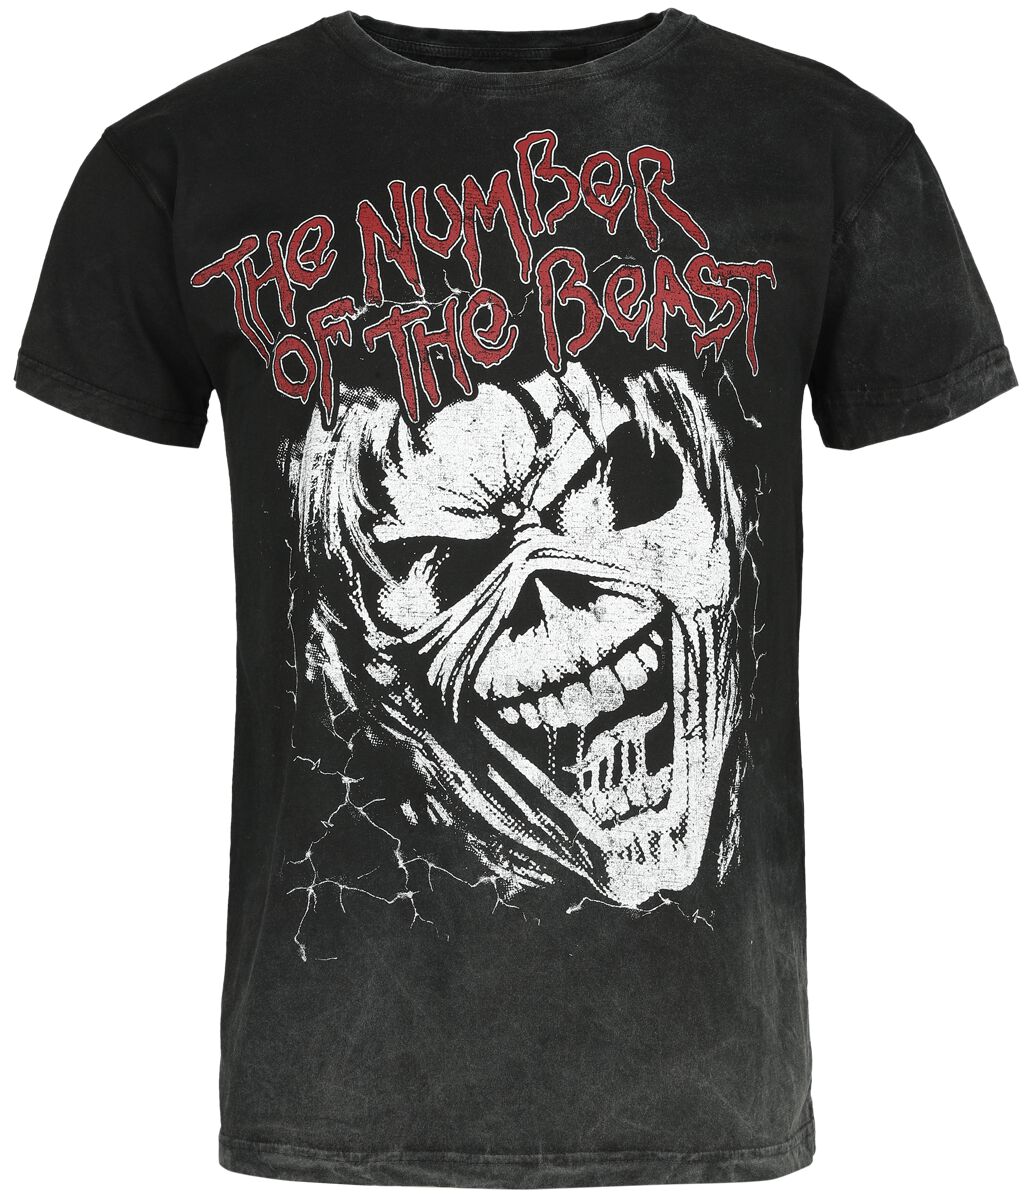 Iron Maiden T-Shirt - The number of the beast - S bis M - für Männer - Größe S - schwarz  - Lizenziertes Merchandise!